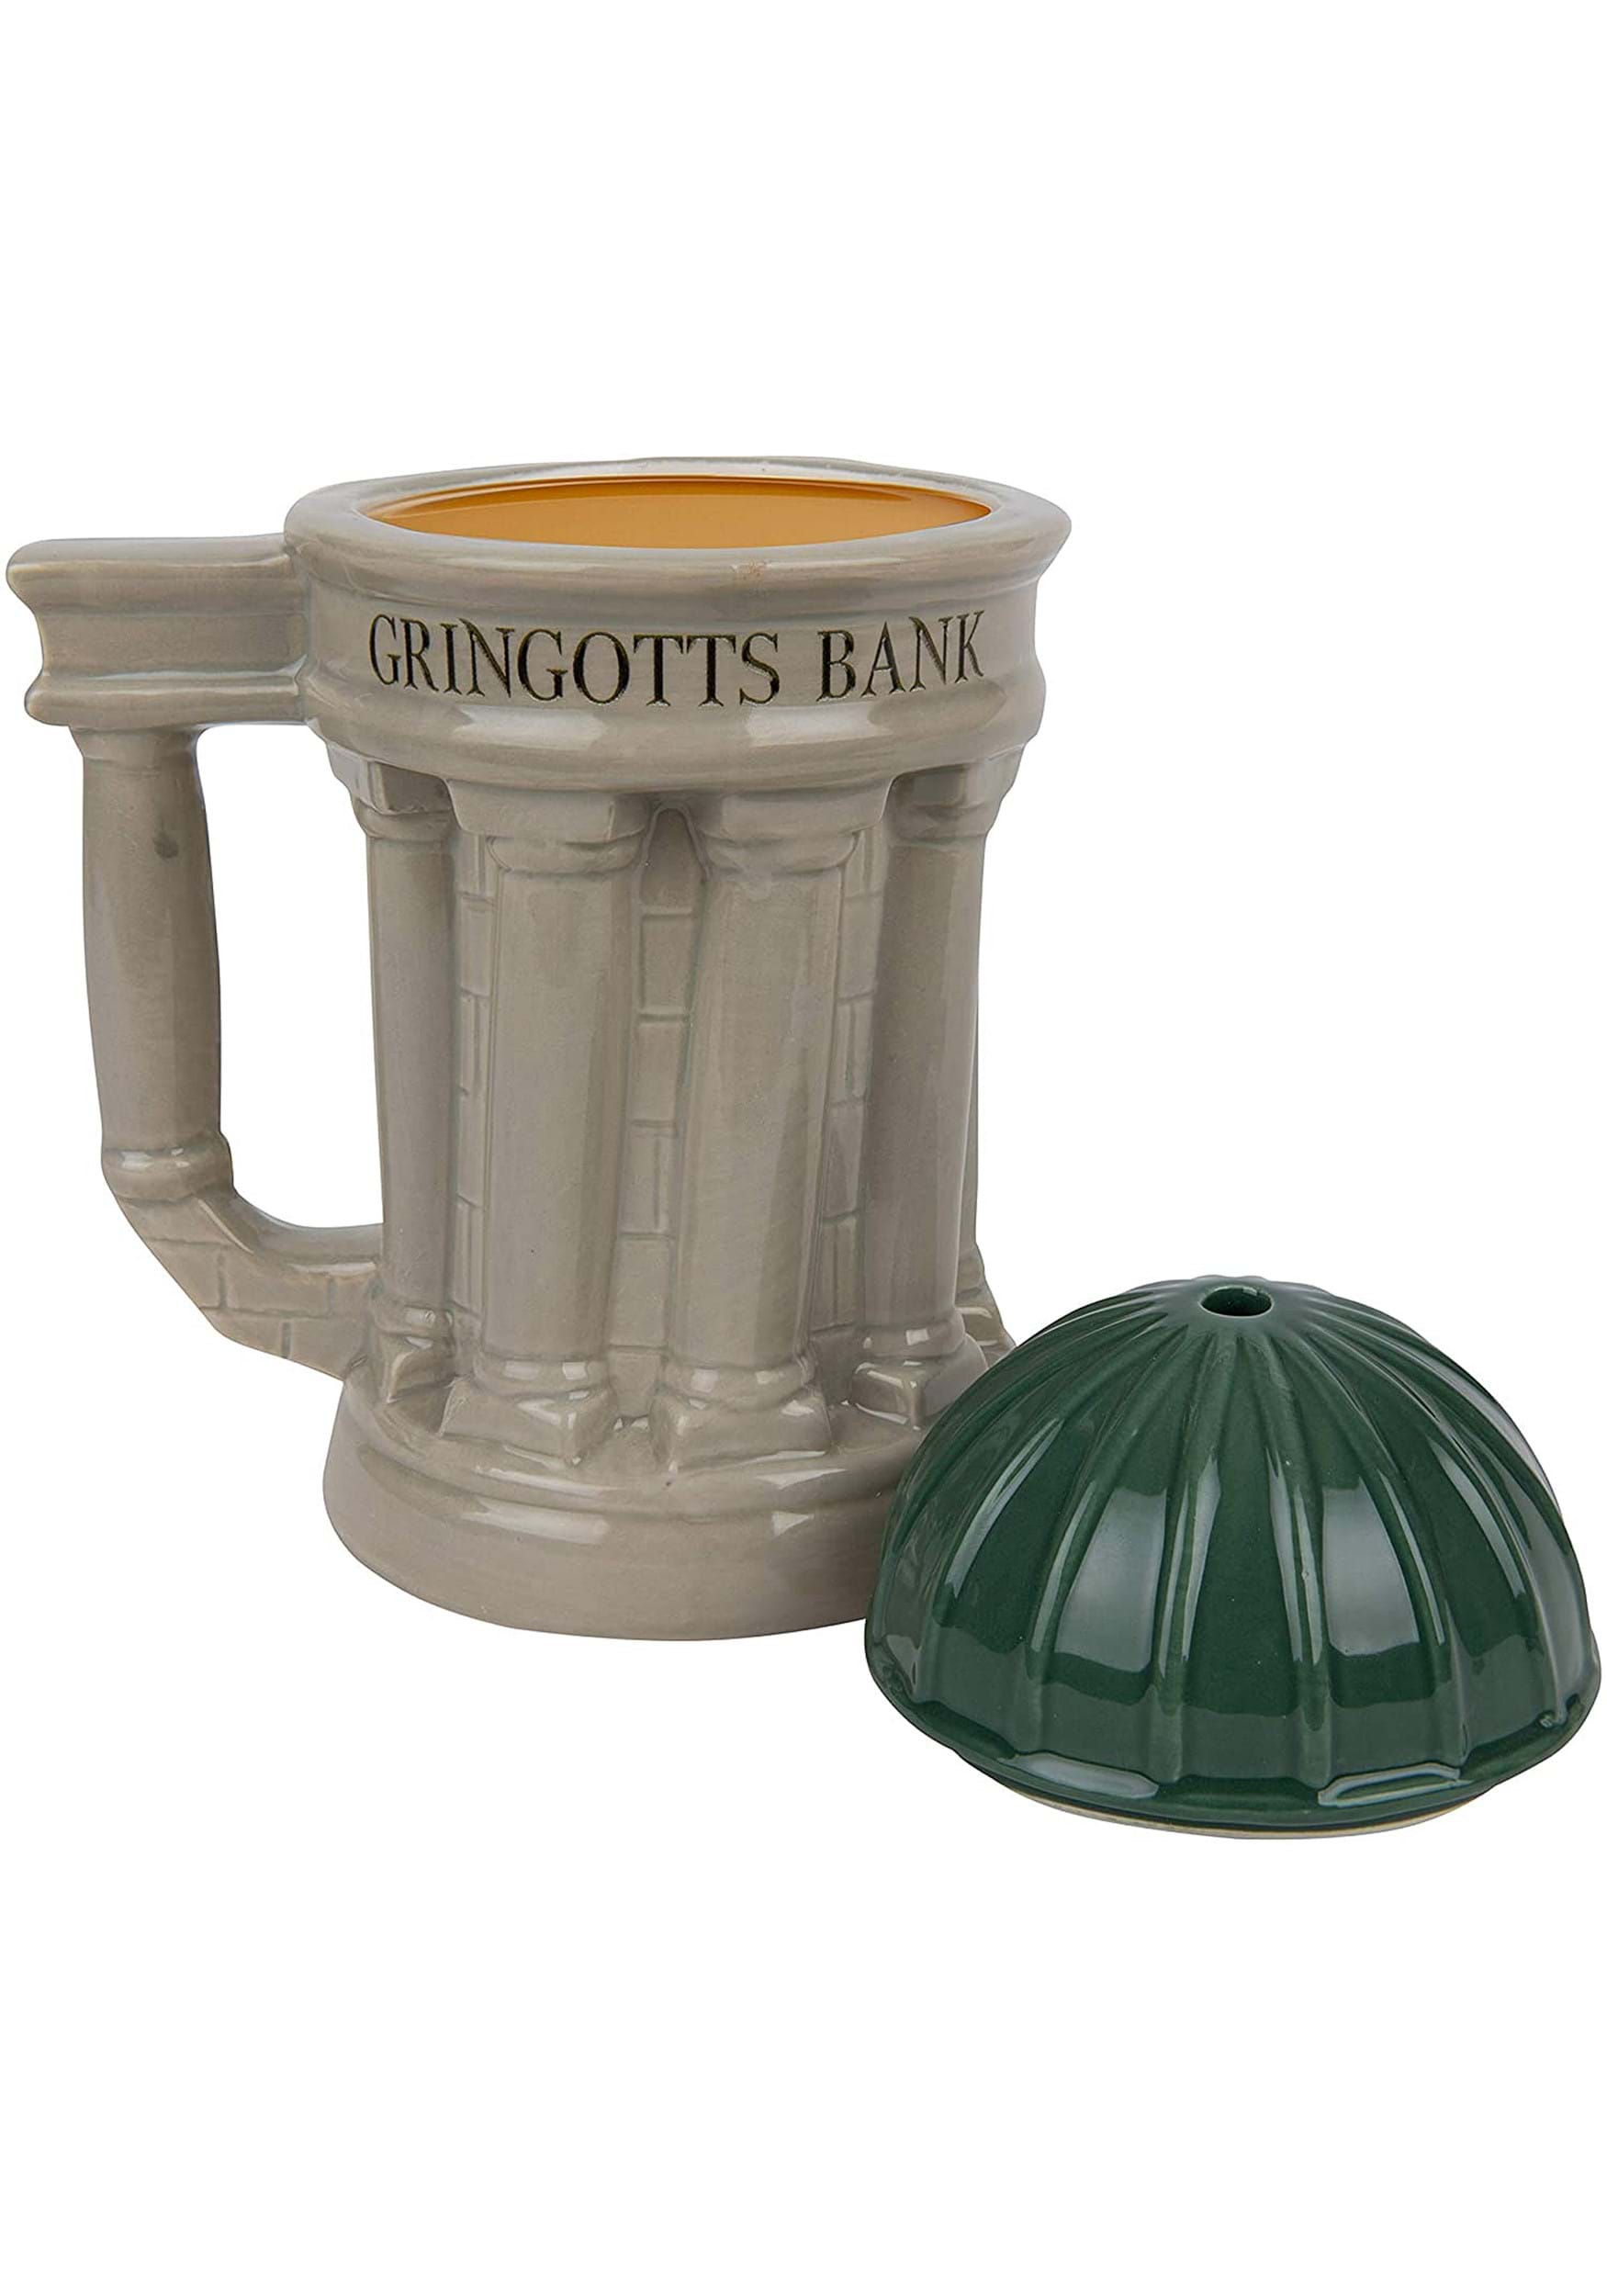 Mug Of Gringotts Bank